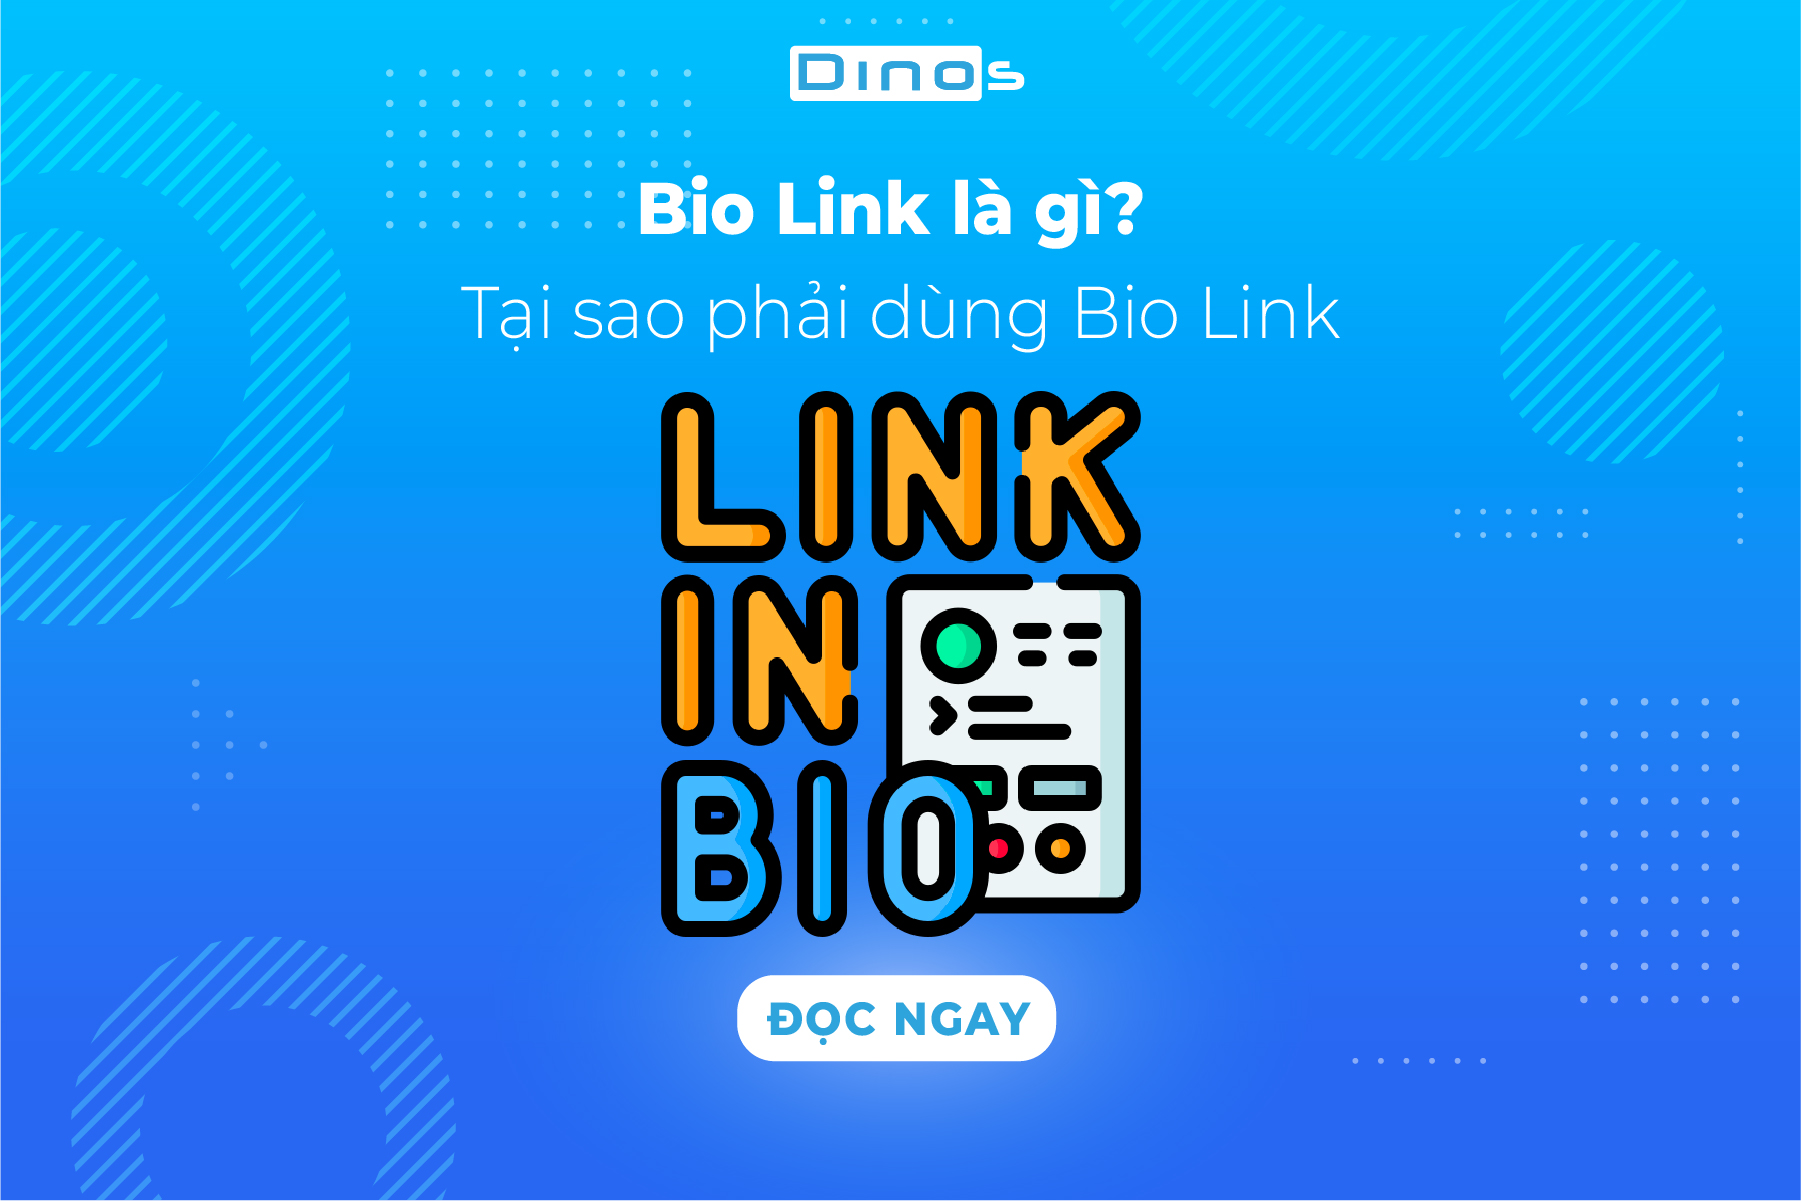 Bio Link là gì? Tại sao phải dùng Bio Link